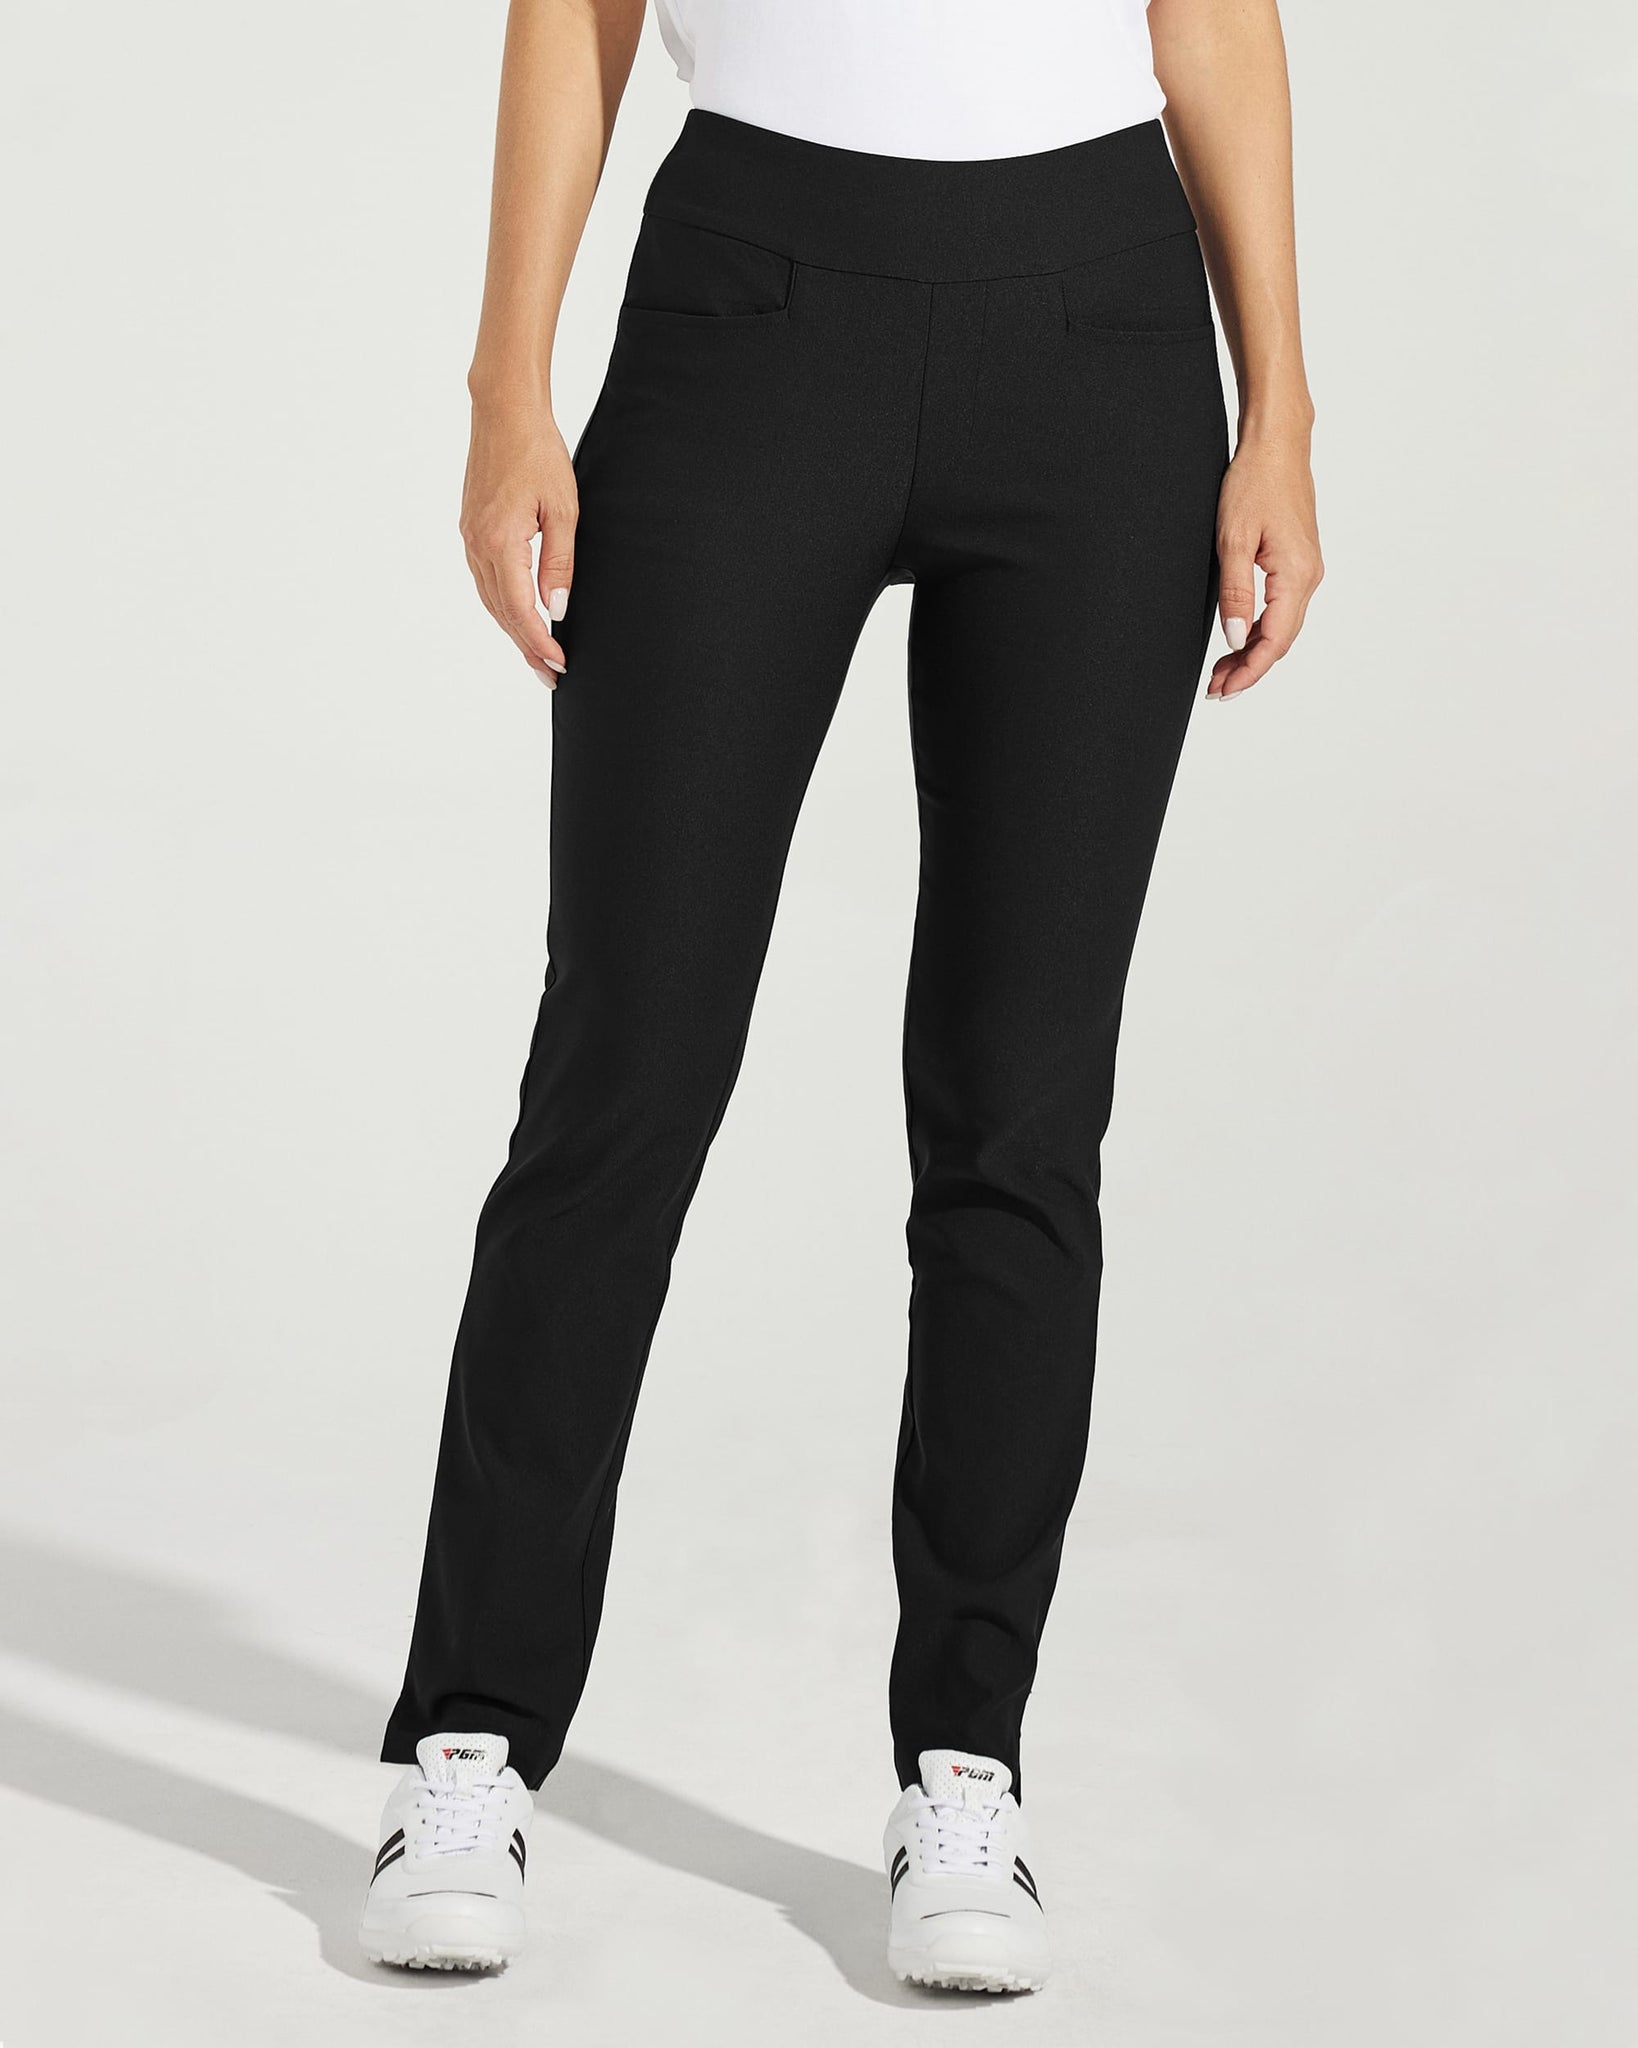 Women's Golf Pull-On Pants_Black_model1